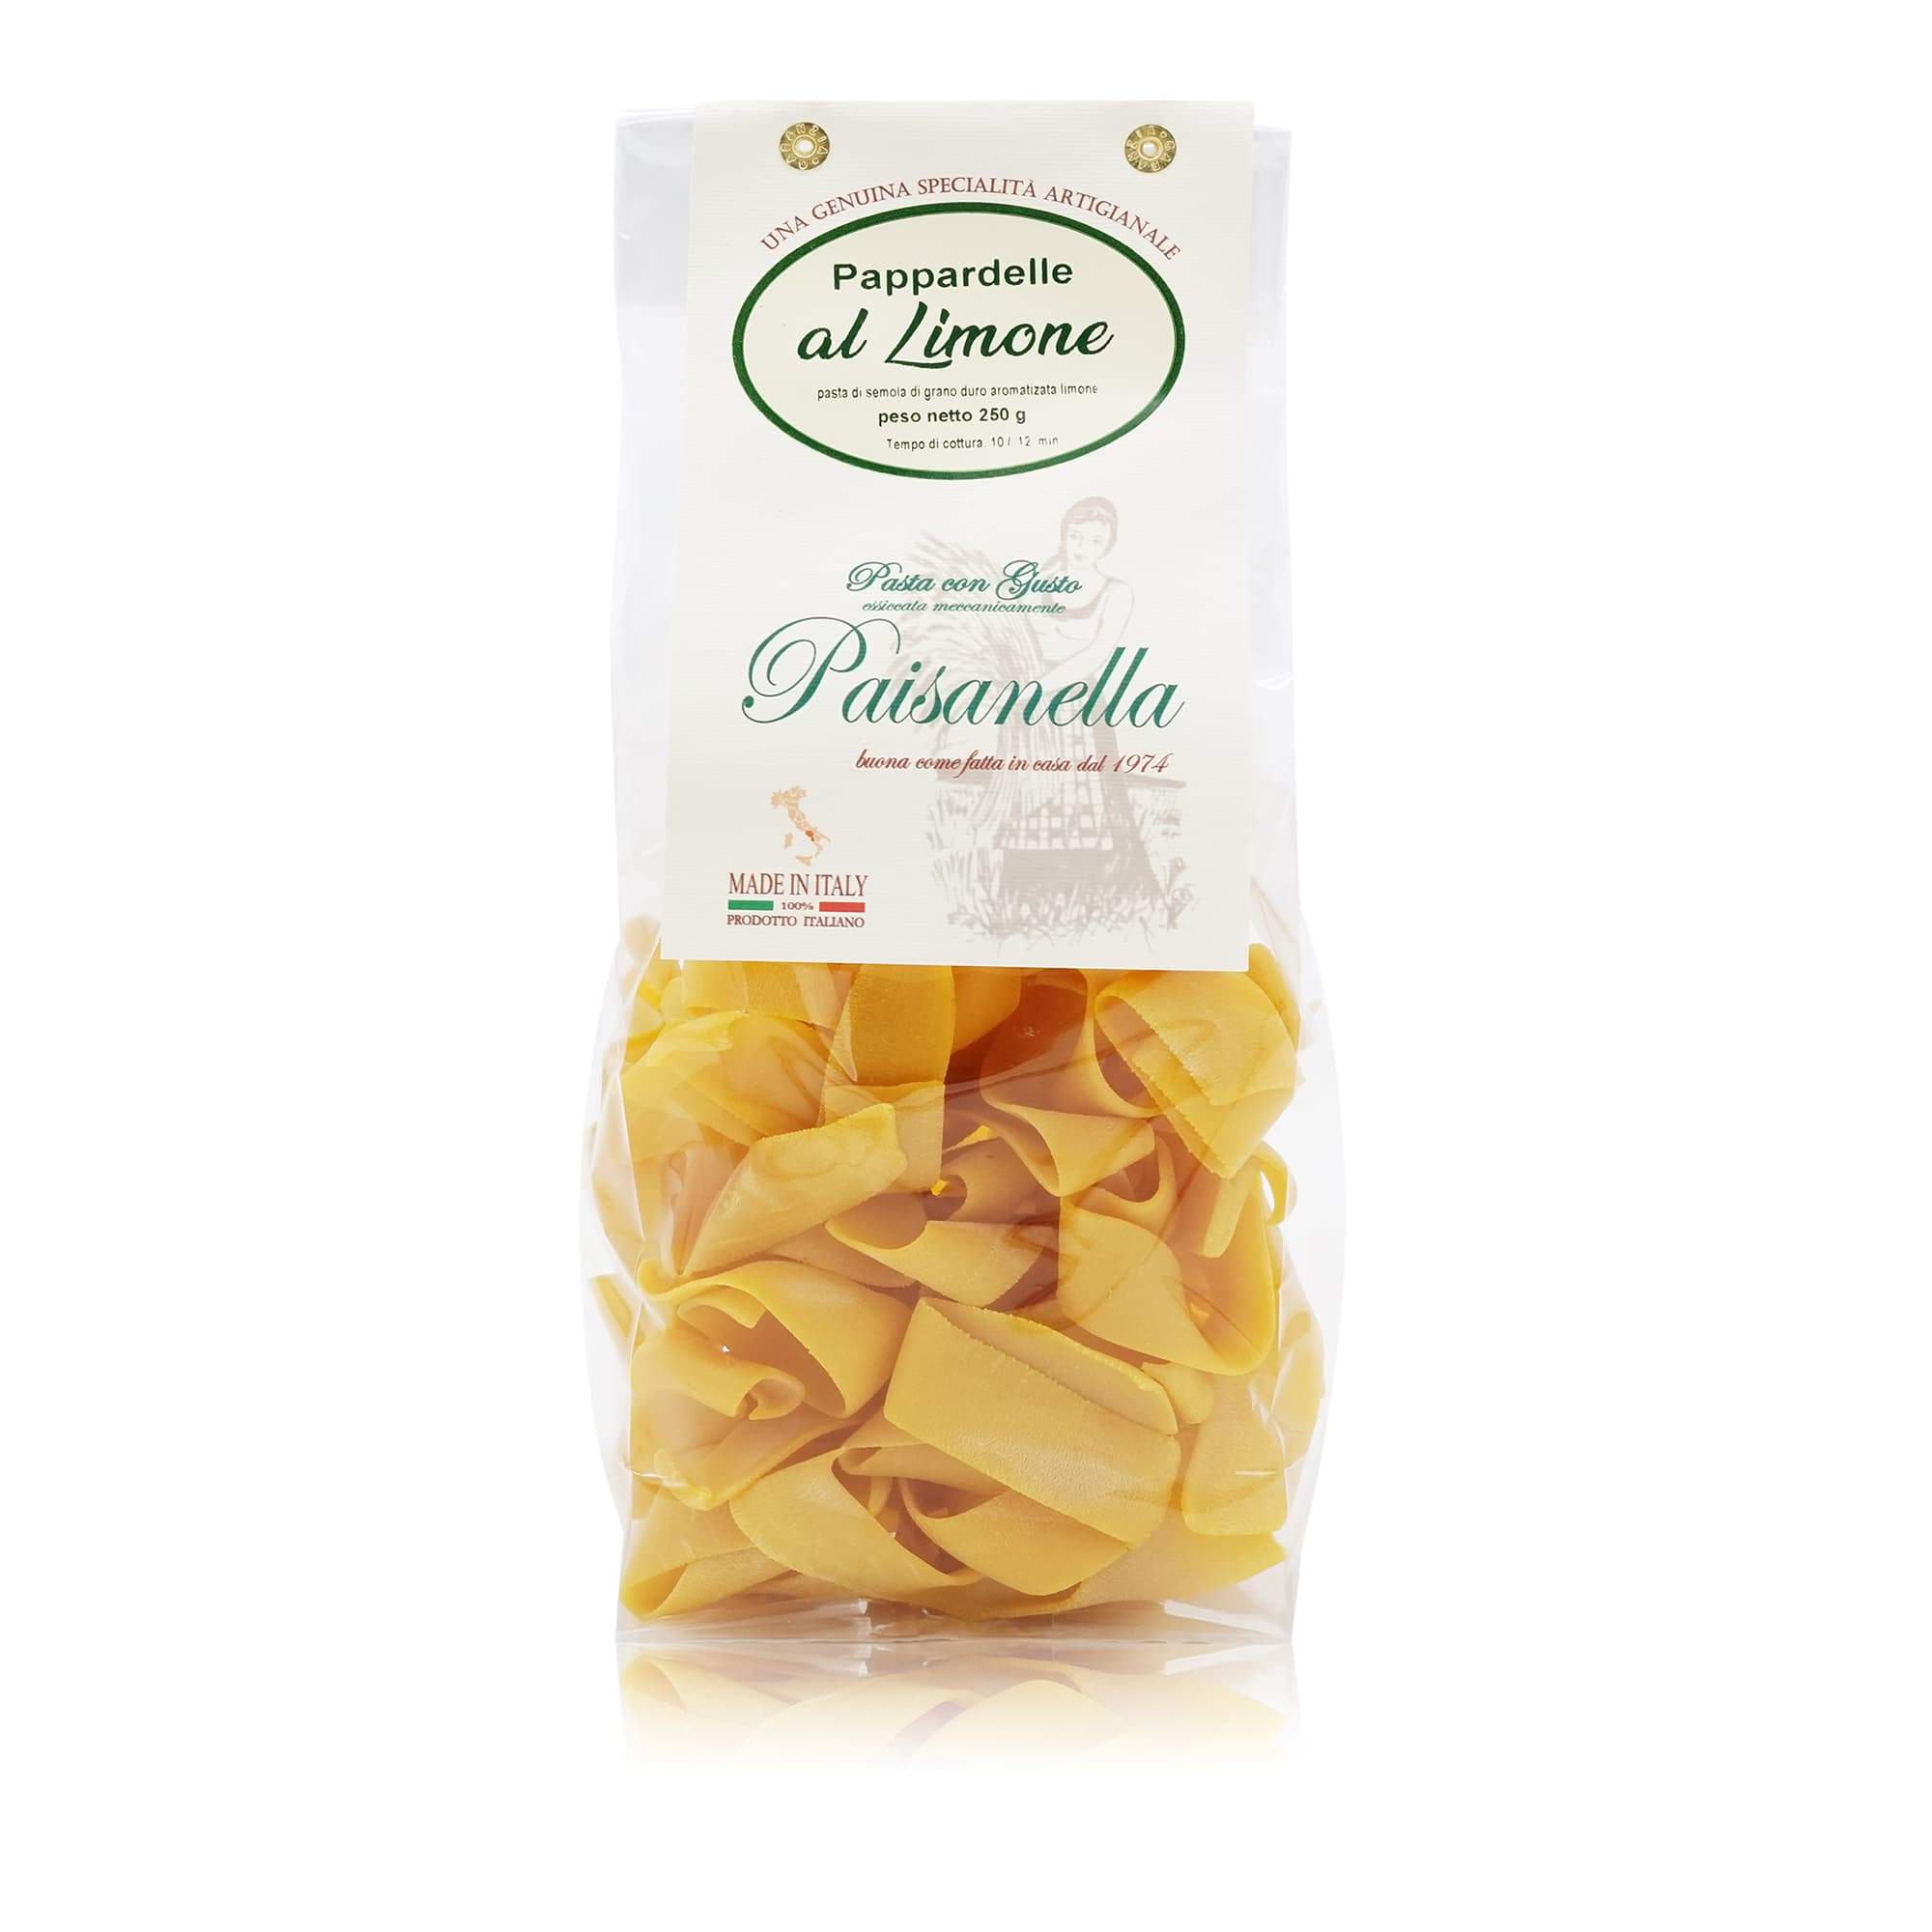 PAISANELLA Pappardelle al Limone – Zitronen-Pappardelle - 0,250kg